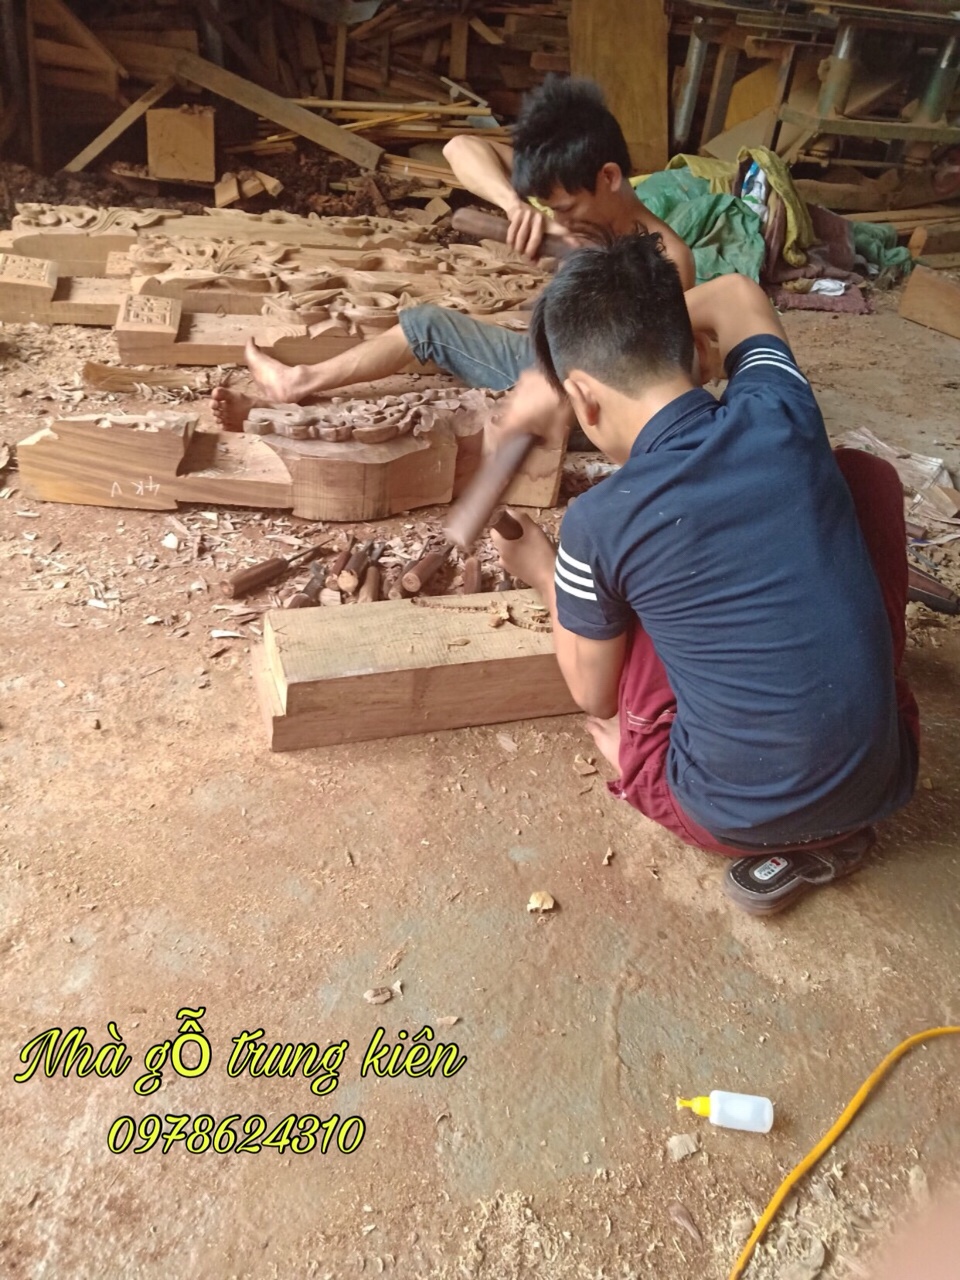 Thiết kế nhà gỗ truyền thống - Nhà Gỗ Trung Kiên - Công Ty Sản Xuất Và Thương Mại Đồ Gỗ Trung Kiên